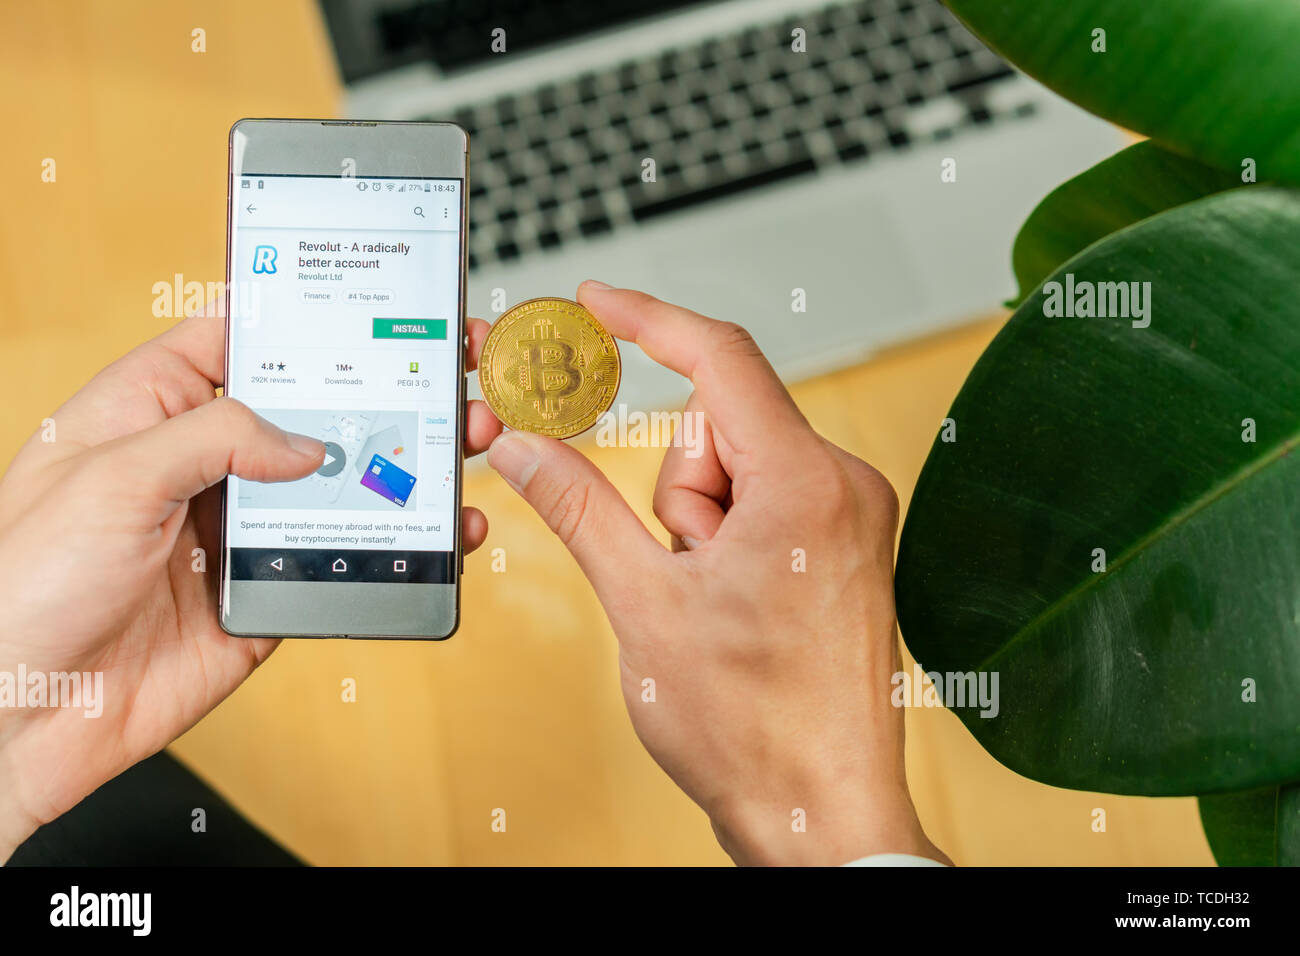 Lubiana, Slovenia 29.4.2019: imprenditore tenendo lo smartphone e cercando di scaricare app revolut e moneta Bitcoin su una scrivania in ufficio Foto Stock